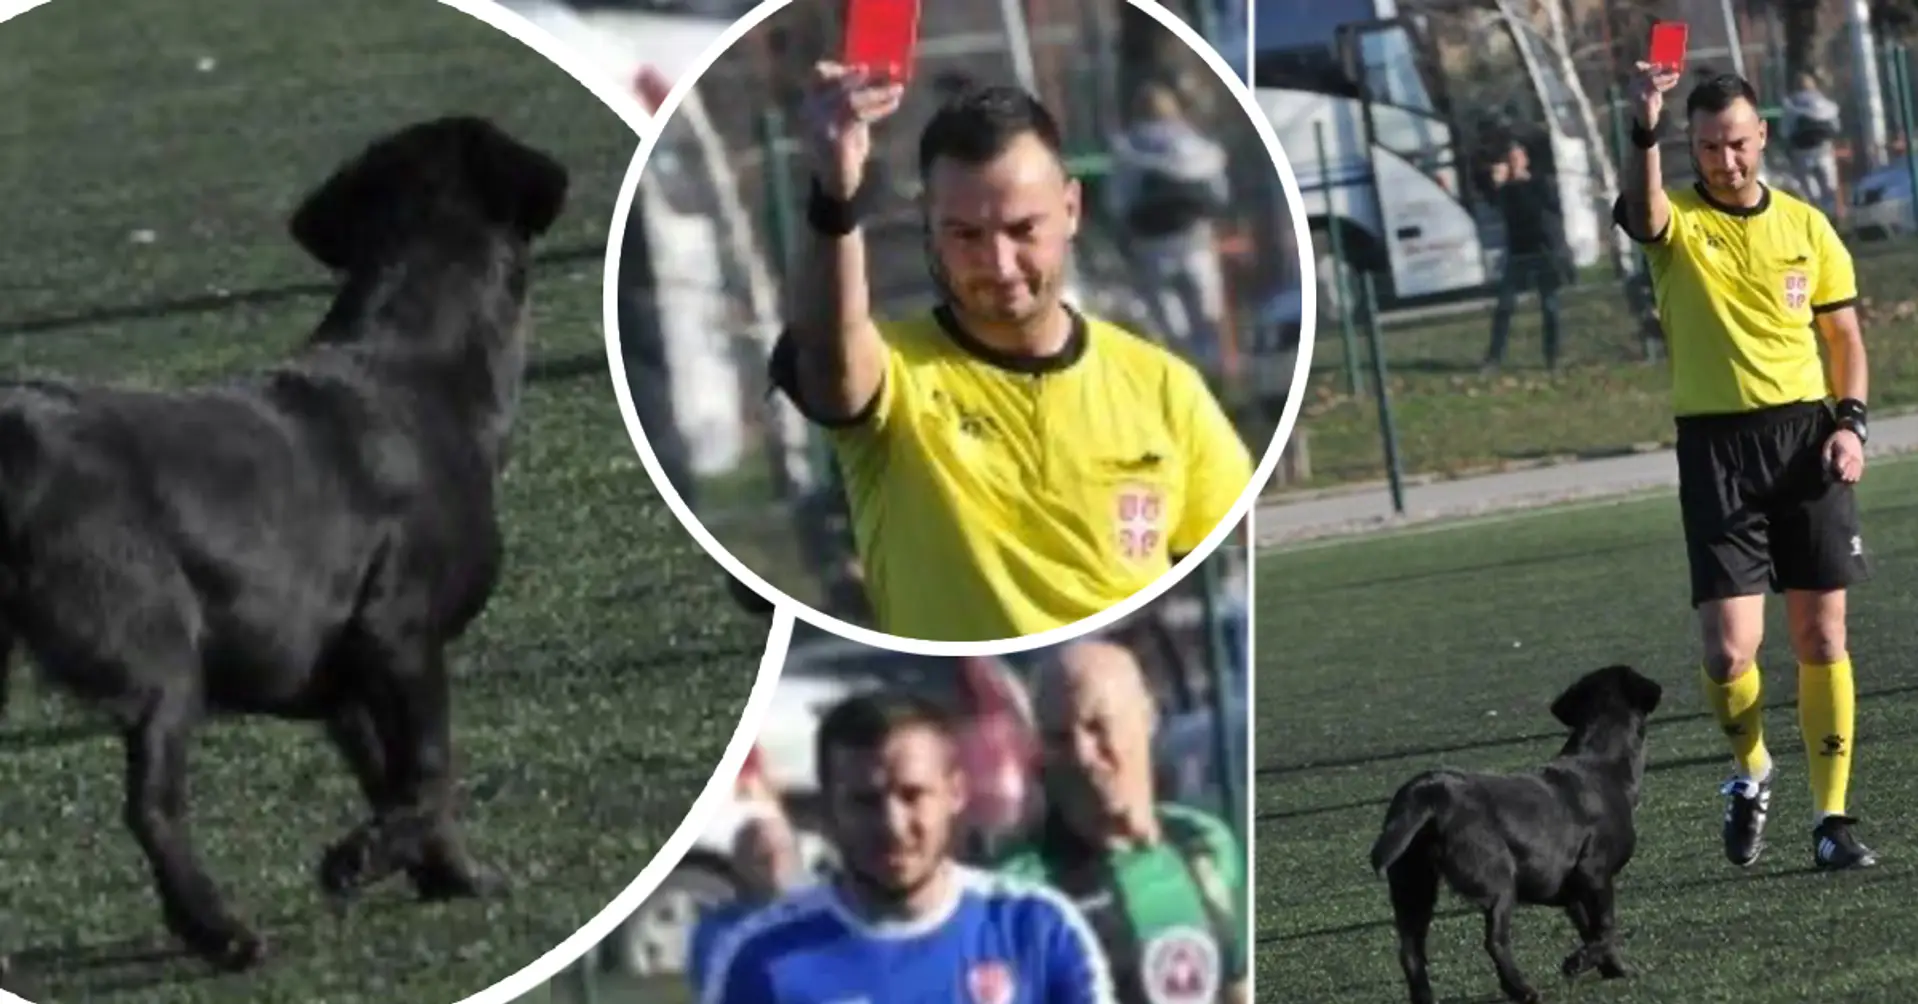 Serbischer Hund sieht Rot für viermaliges Eindringen auf das Spielfeld, weigert sich zu gehen, Schiedsrichter bricht Spiel ab